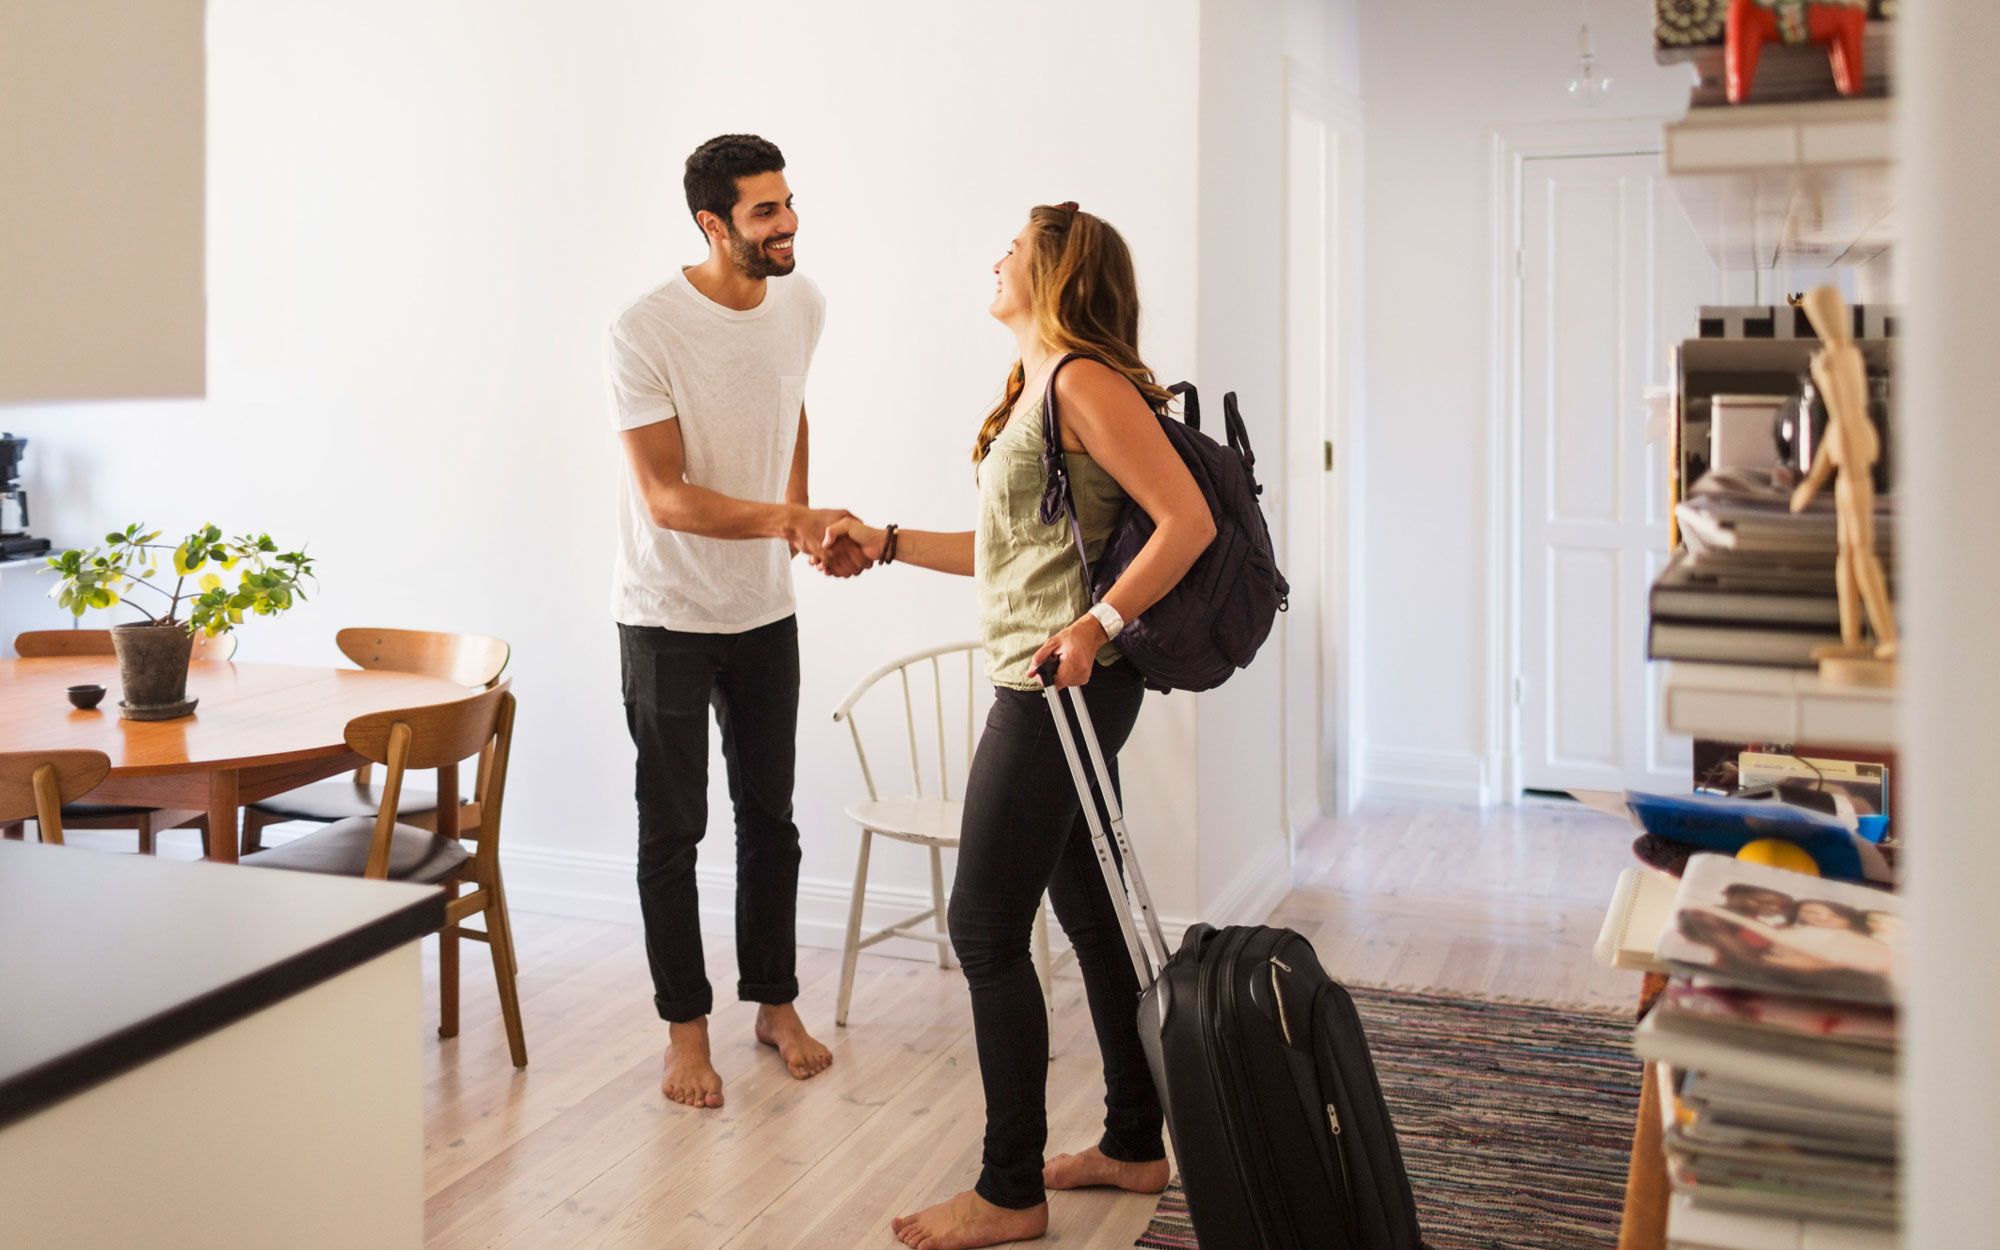 Sous-louer son logement sur des plateformes de location de courte durée comme Airbnb implique de respecter certaines règles au risque de voir son bail résilié.